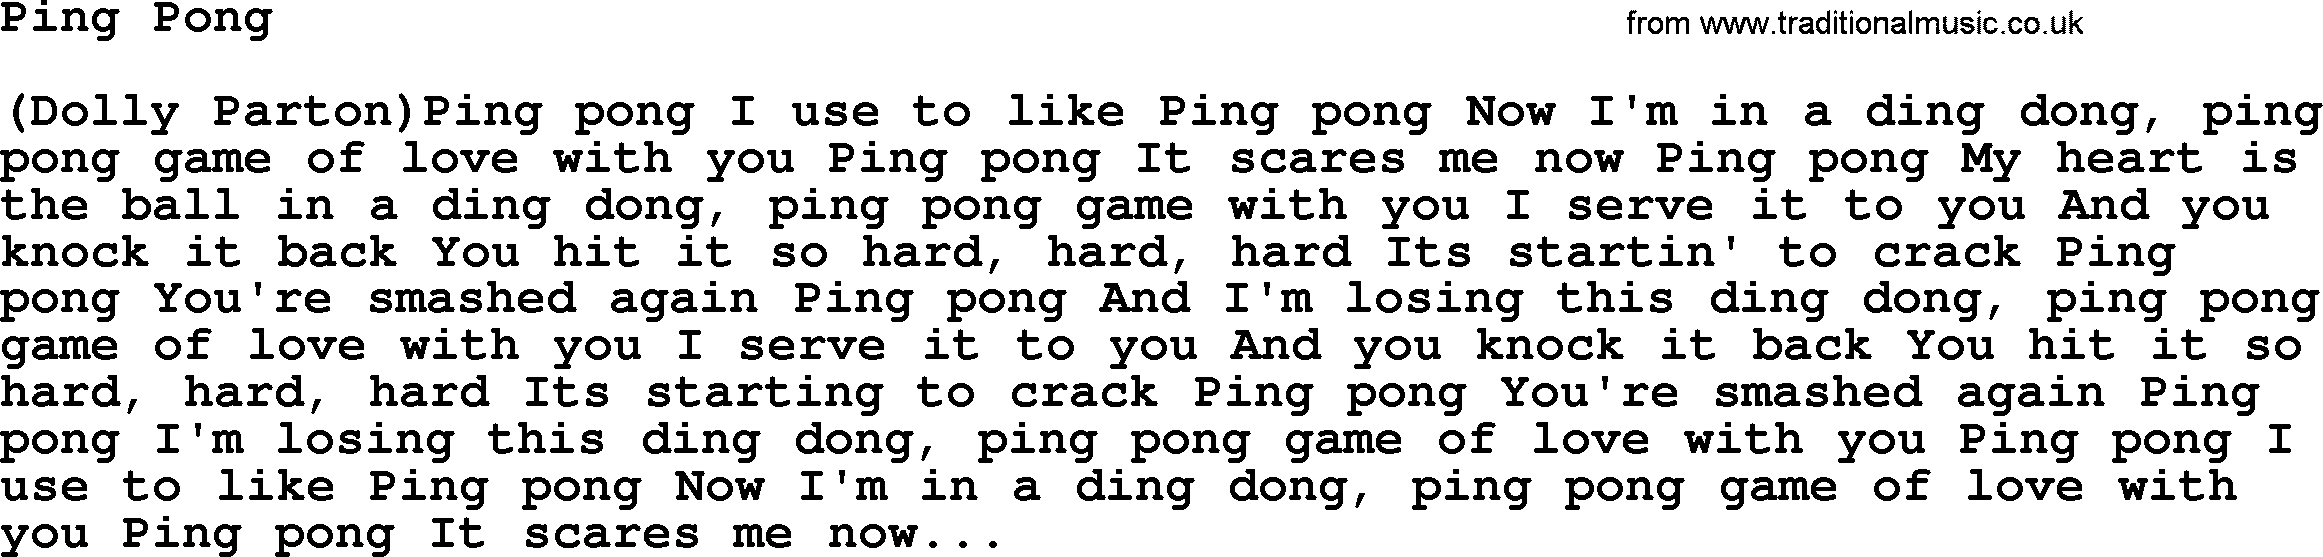 Dolly Parton song Ping Pong.txt lyrics